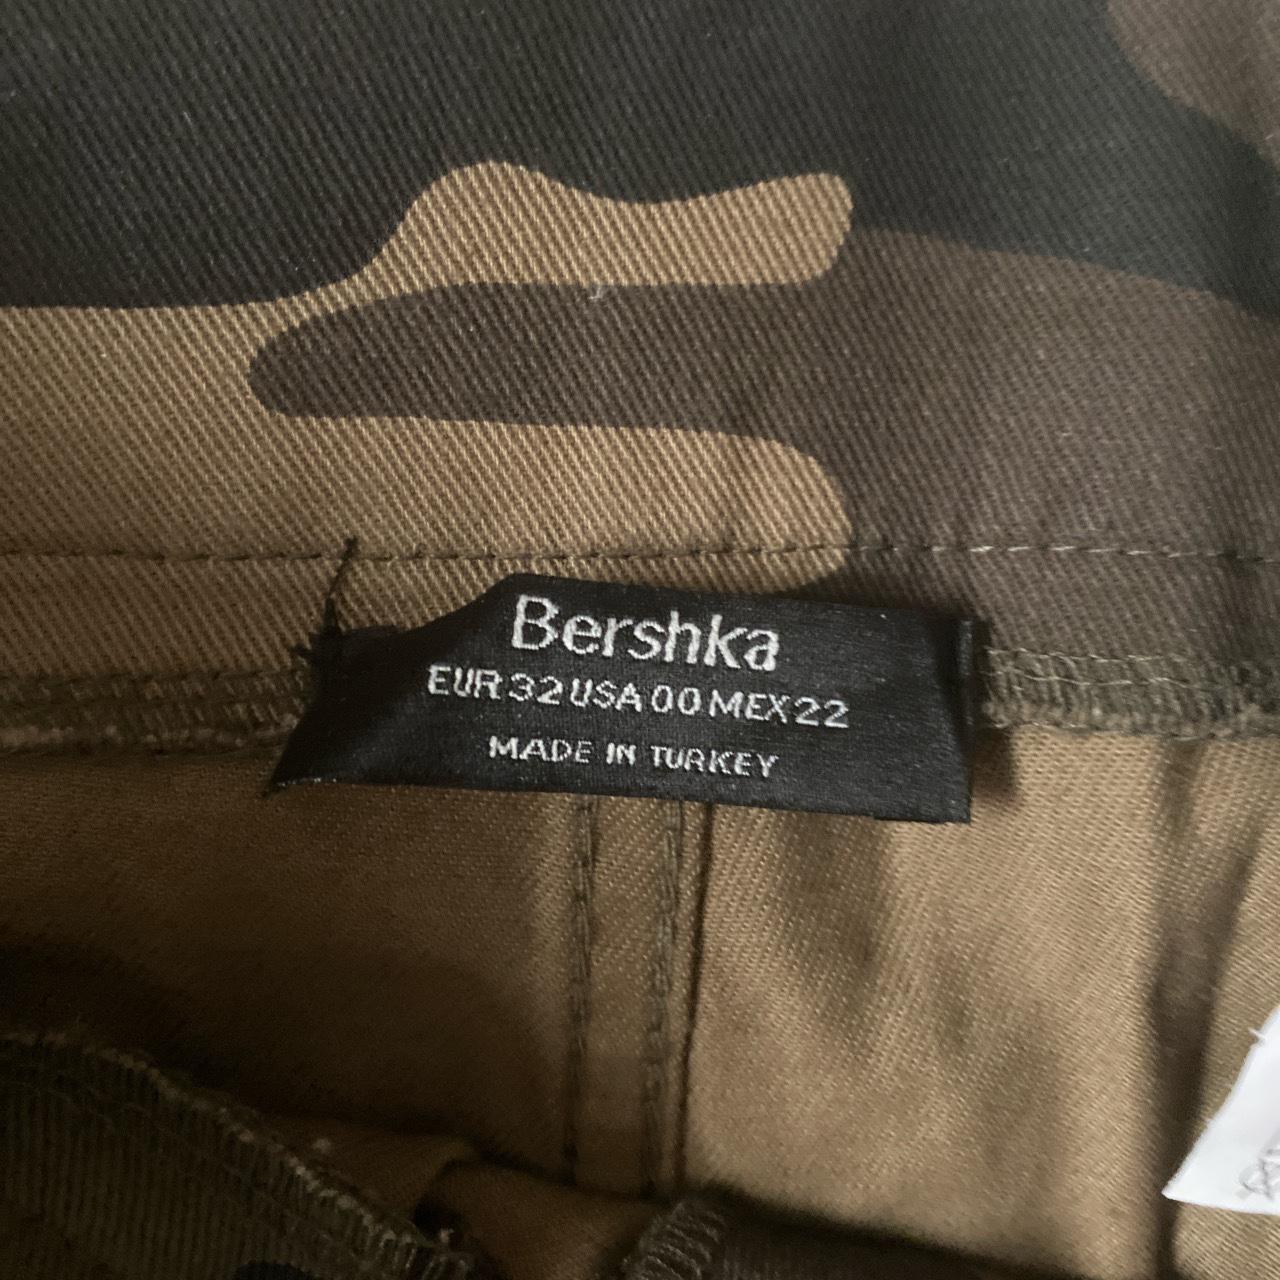 Bershka camo cargo pants Size - 00 Never worn/ in... - Depop